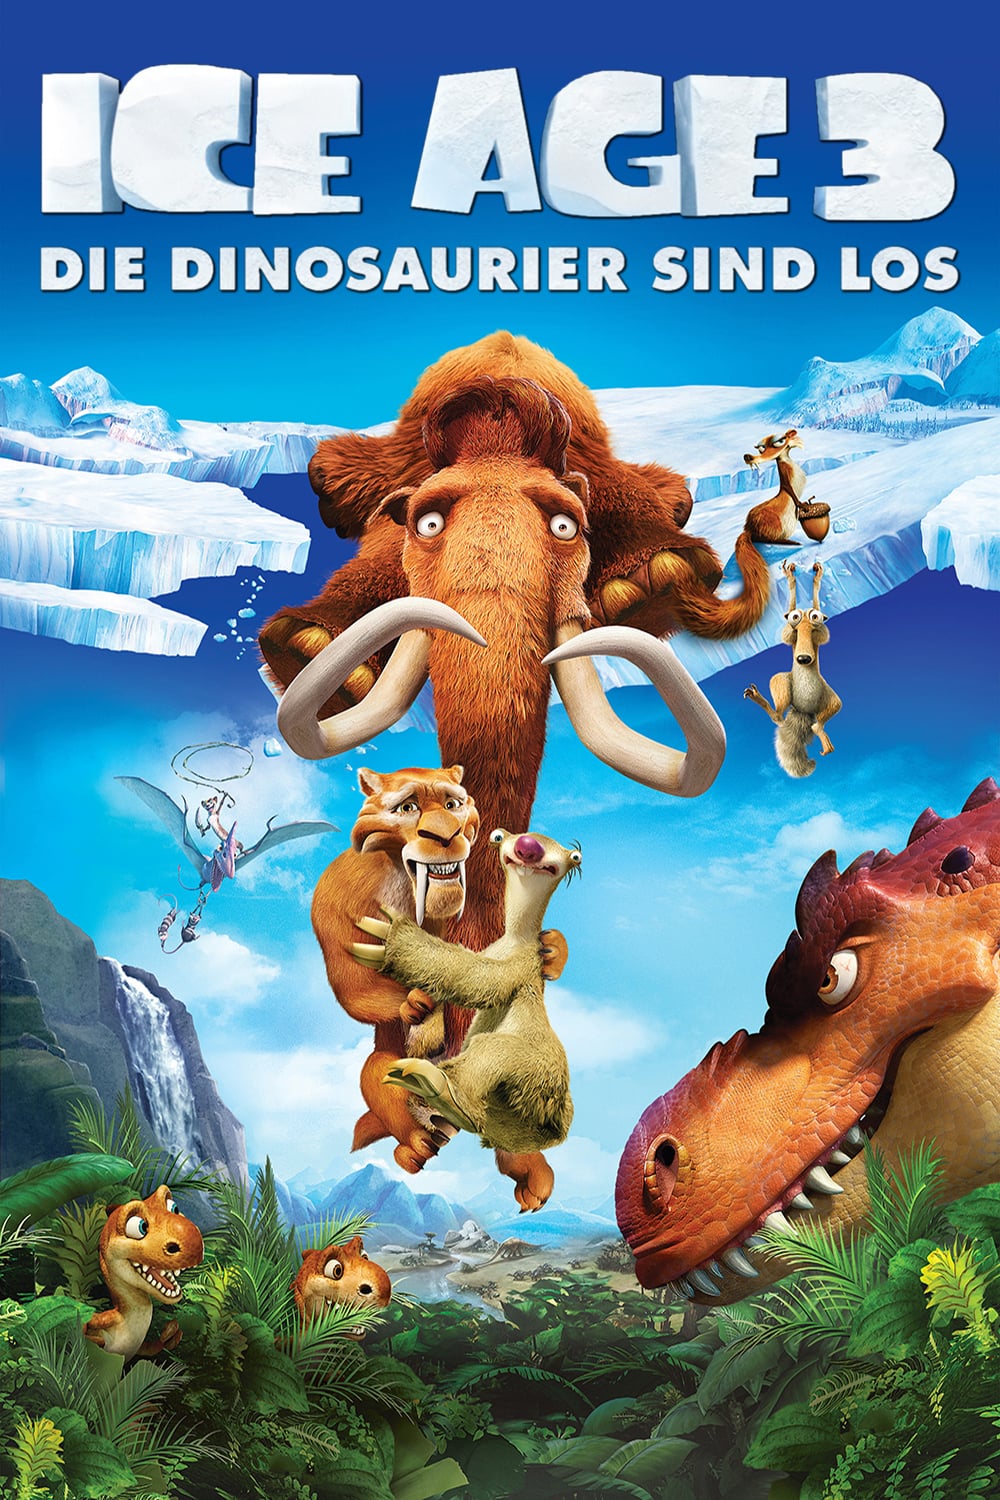 Plakat von "Ice Age 3 - Die Dinosaurier sind los"